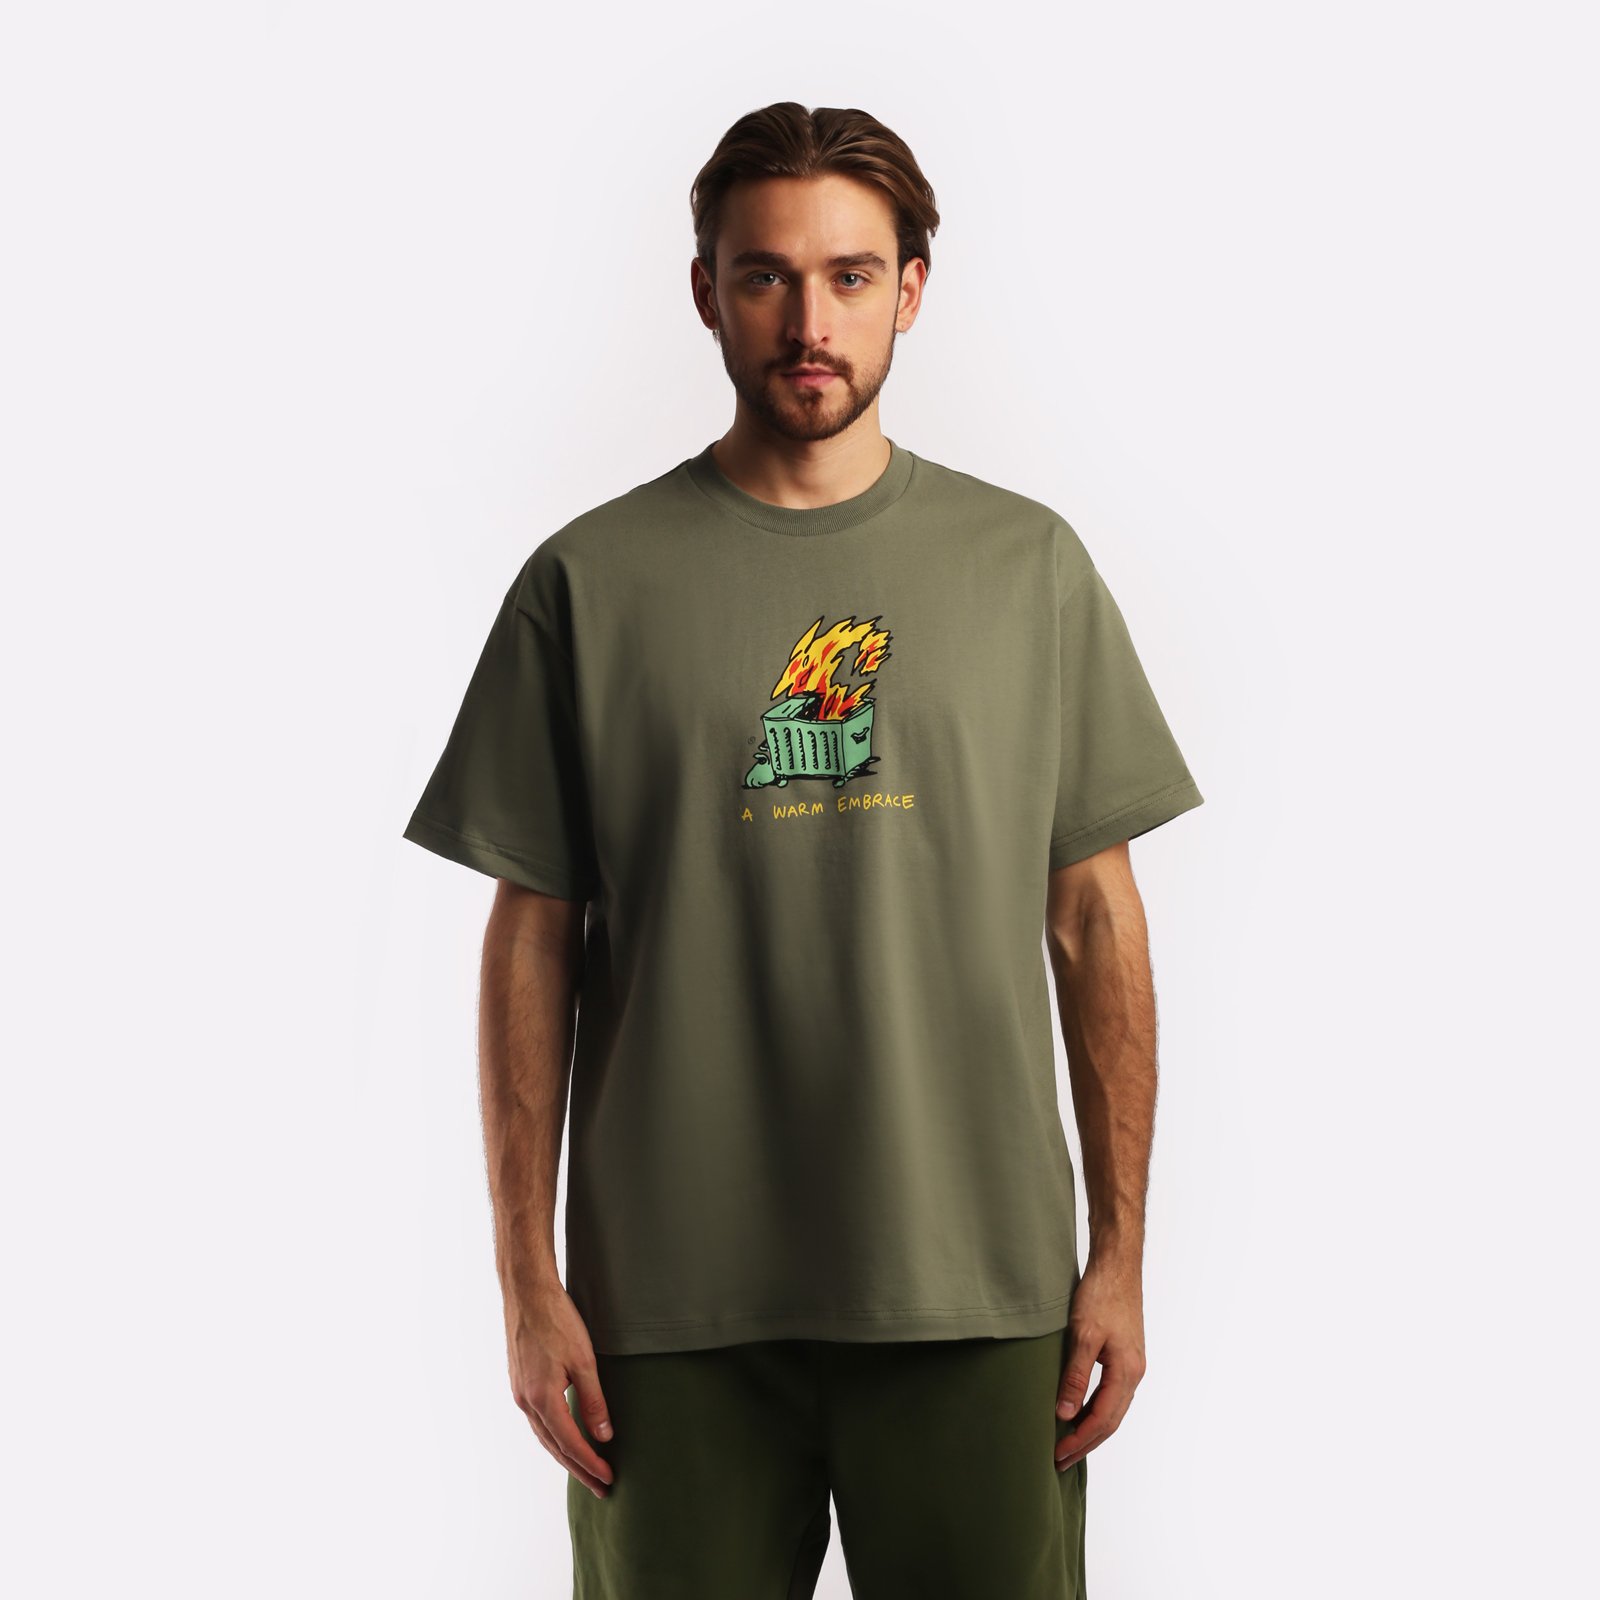 мужская футболка Carhartt WIP S/S Warm Embrace T-Shirt  (I032390-green)  - цена, описание, фото 1